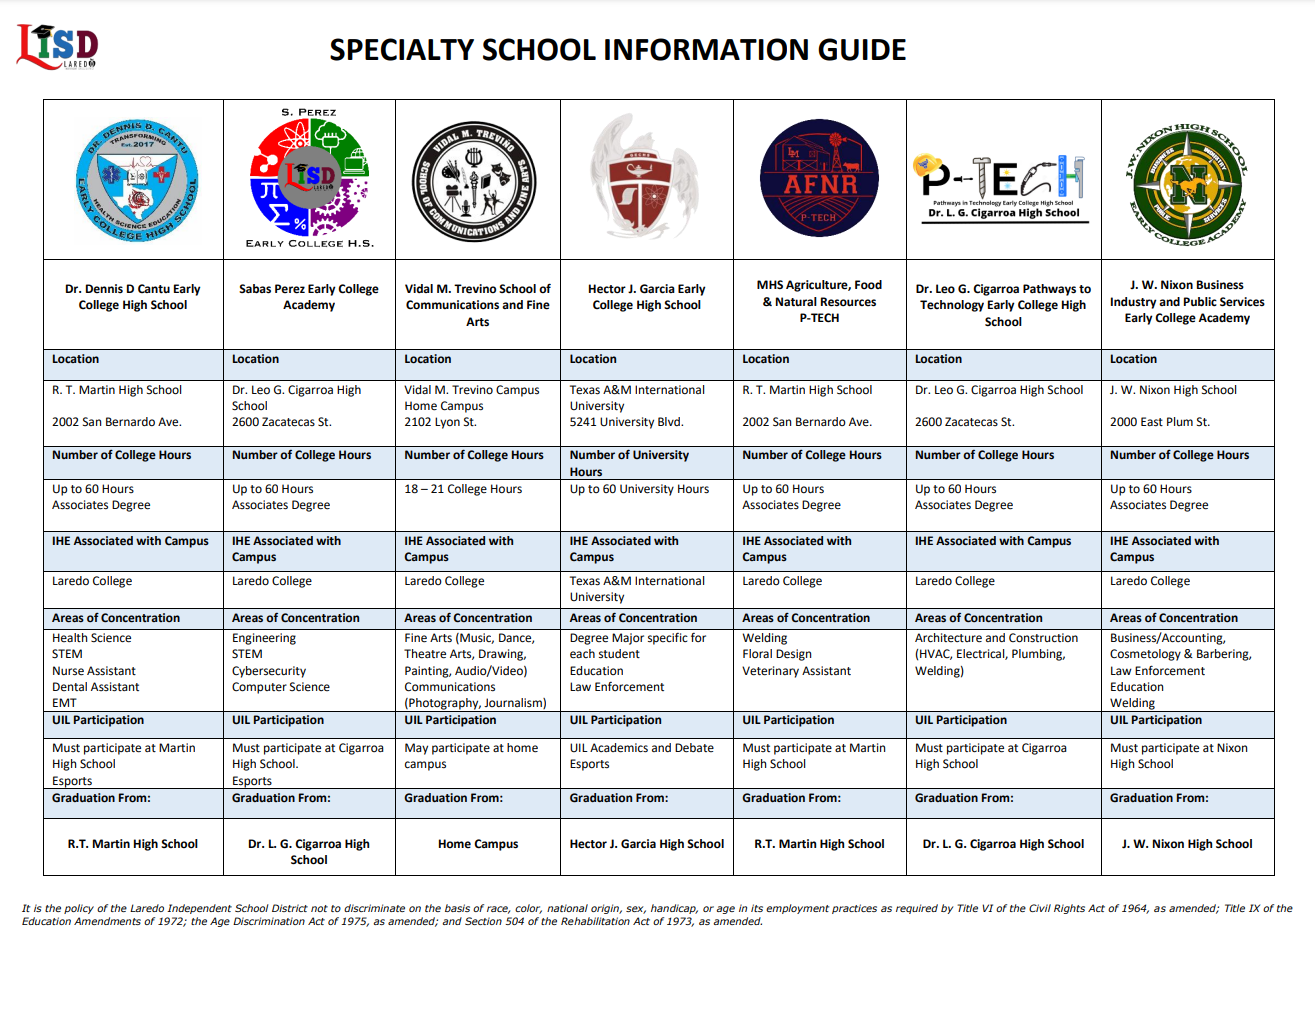 Specialty Schools 23-24